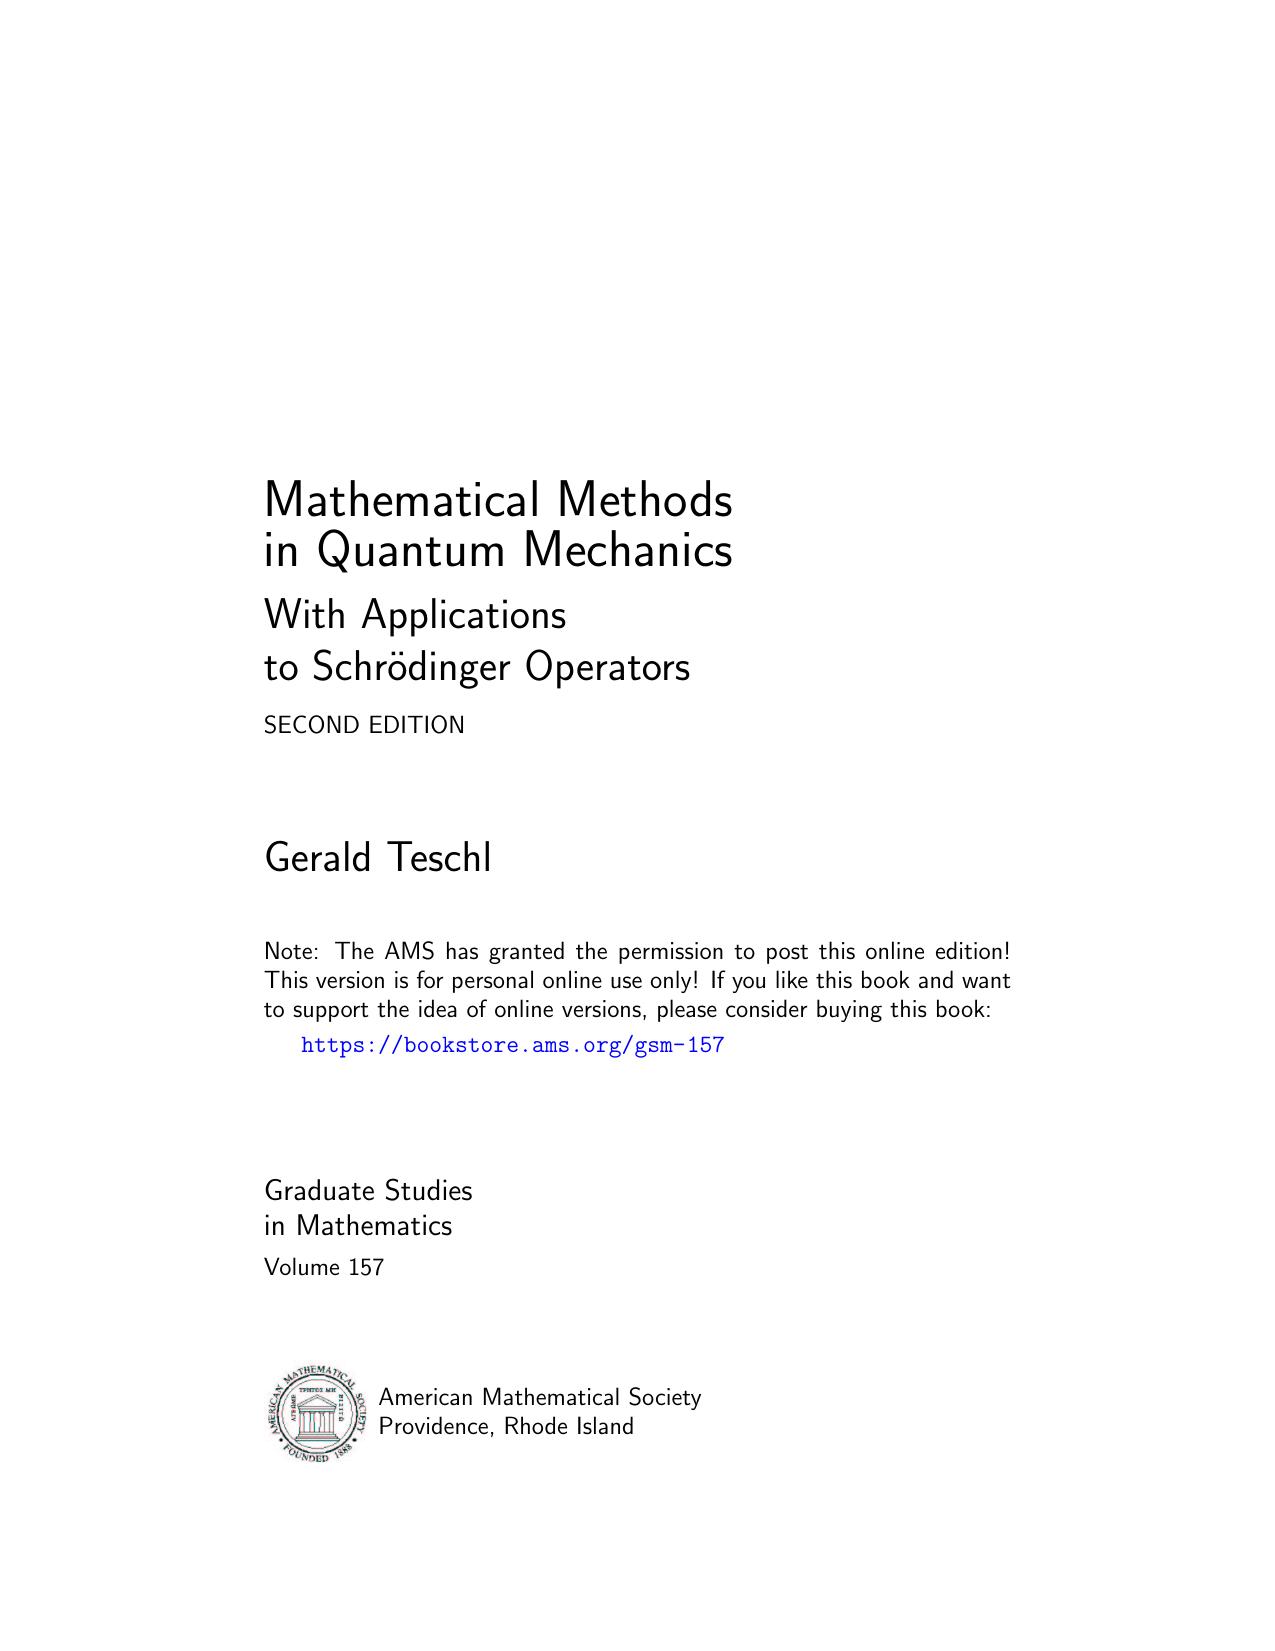 Mathematical Methods in Quantum Mechanics